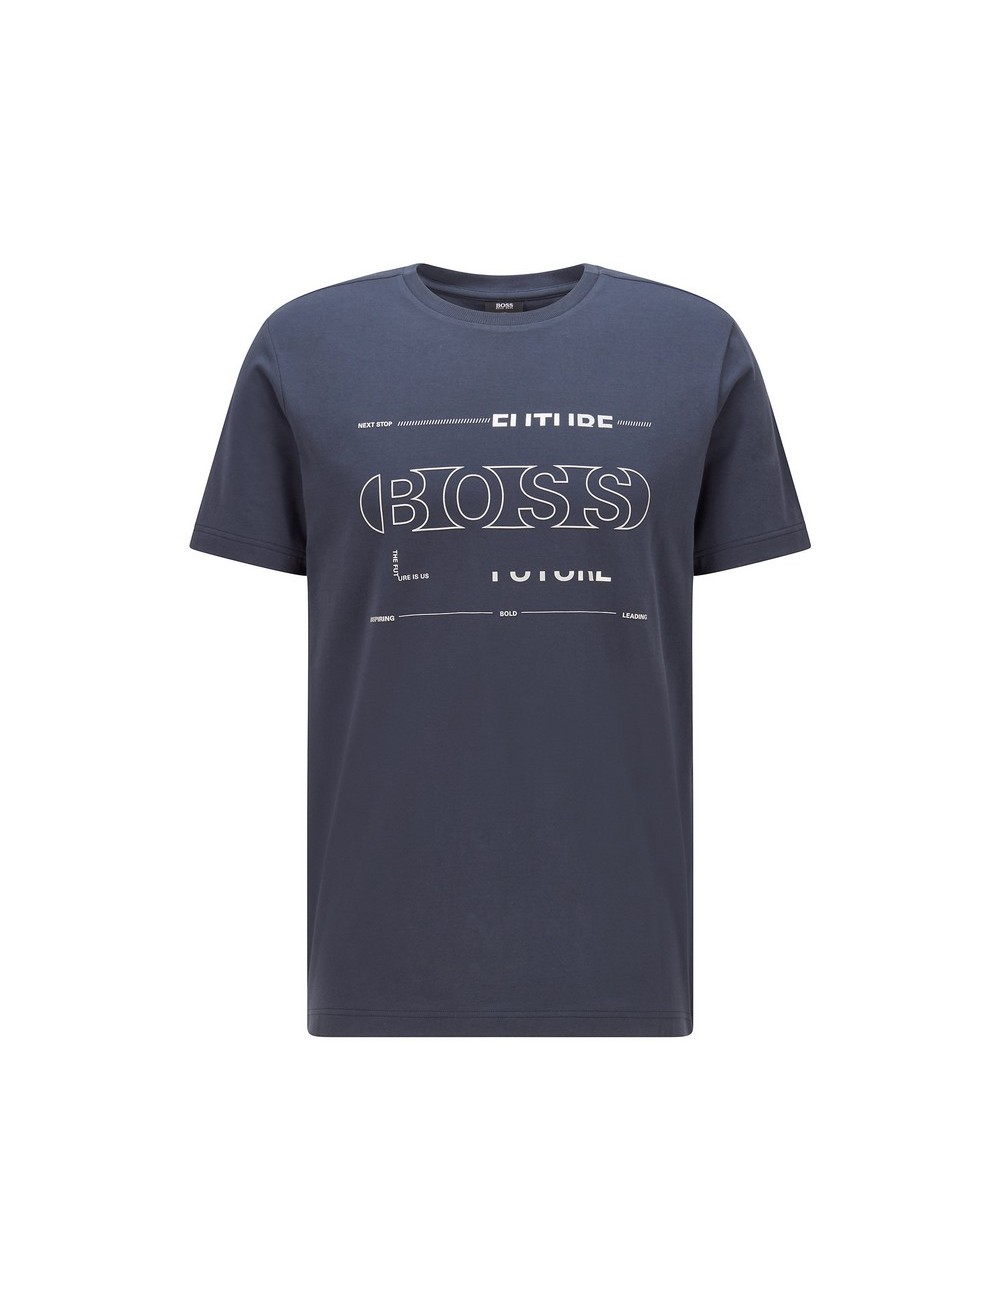 Hugo Boss Tee 2 Navy Blue T -Shirt